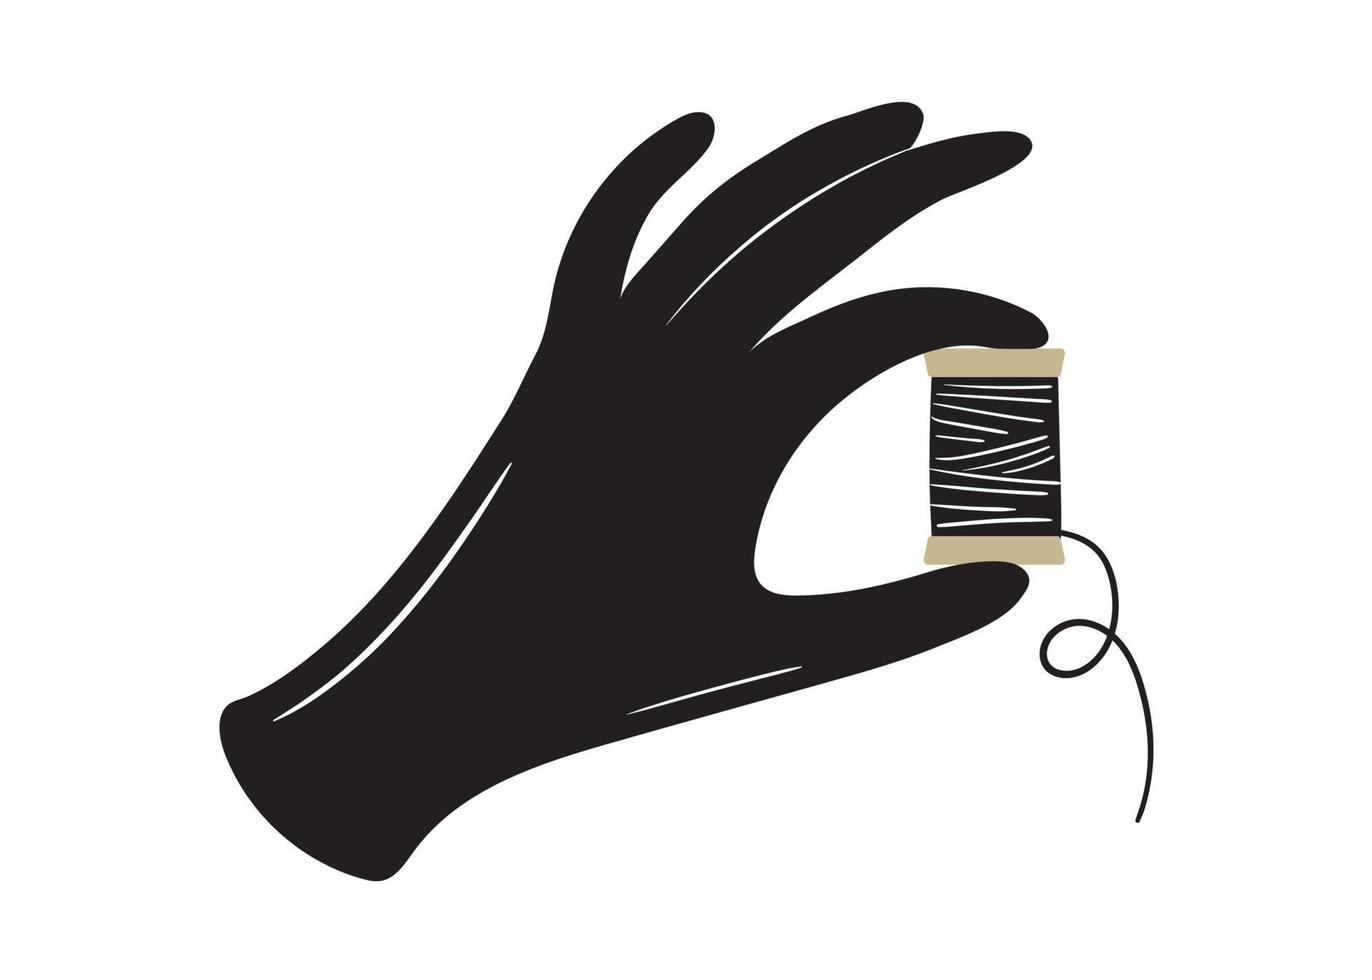 zwarte hand met draden in de hand. illustratie vintage hand getekend in cartoon-stijl vector